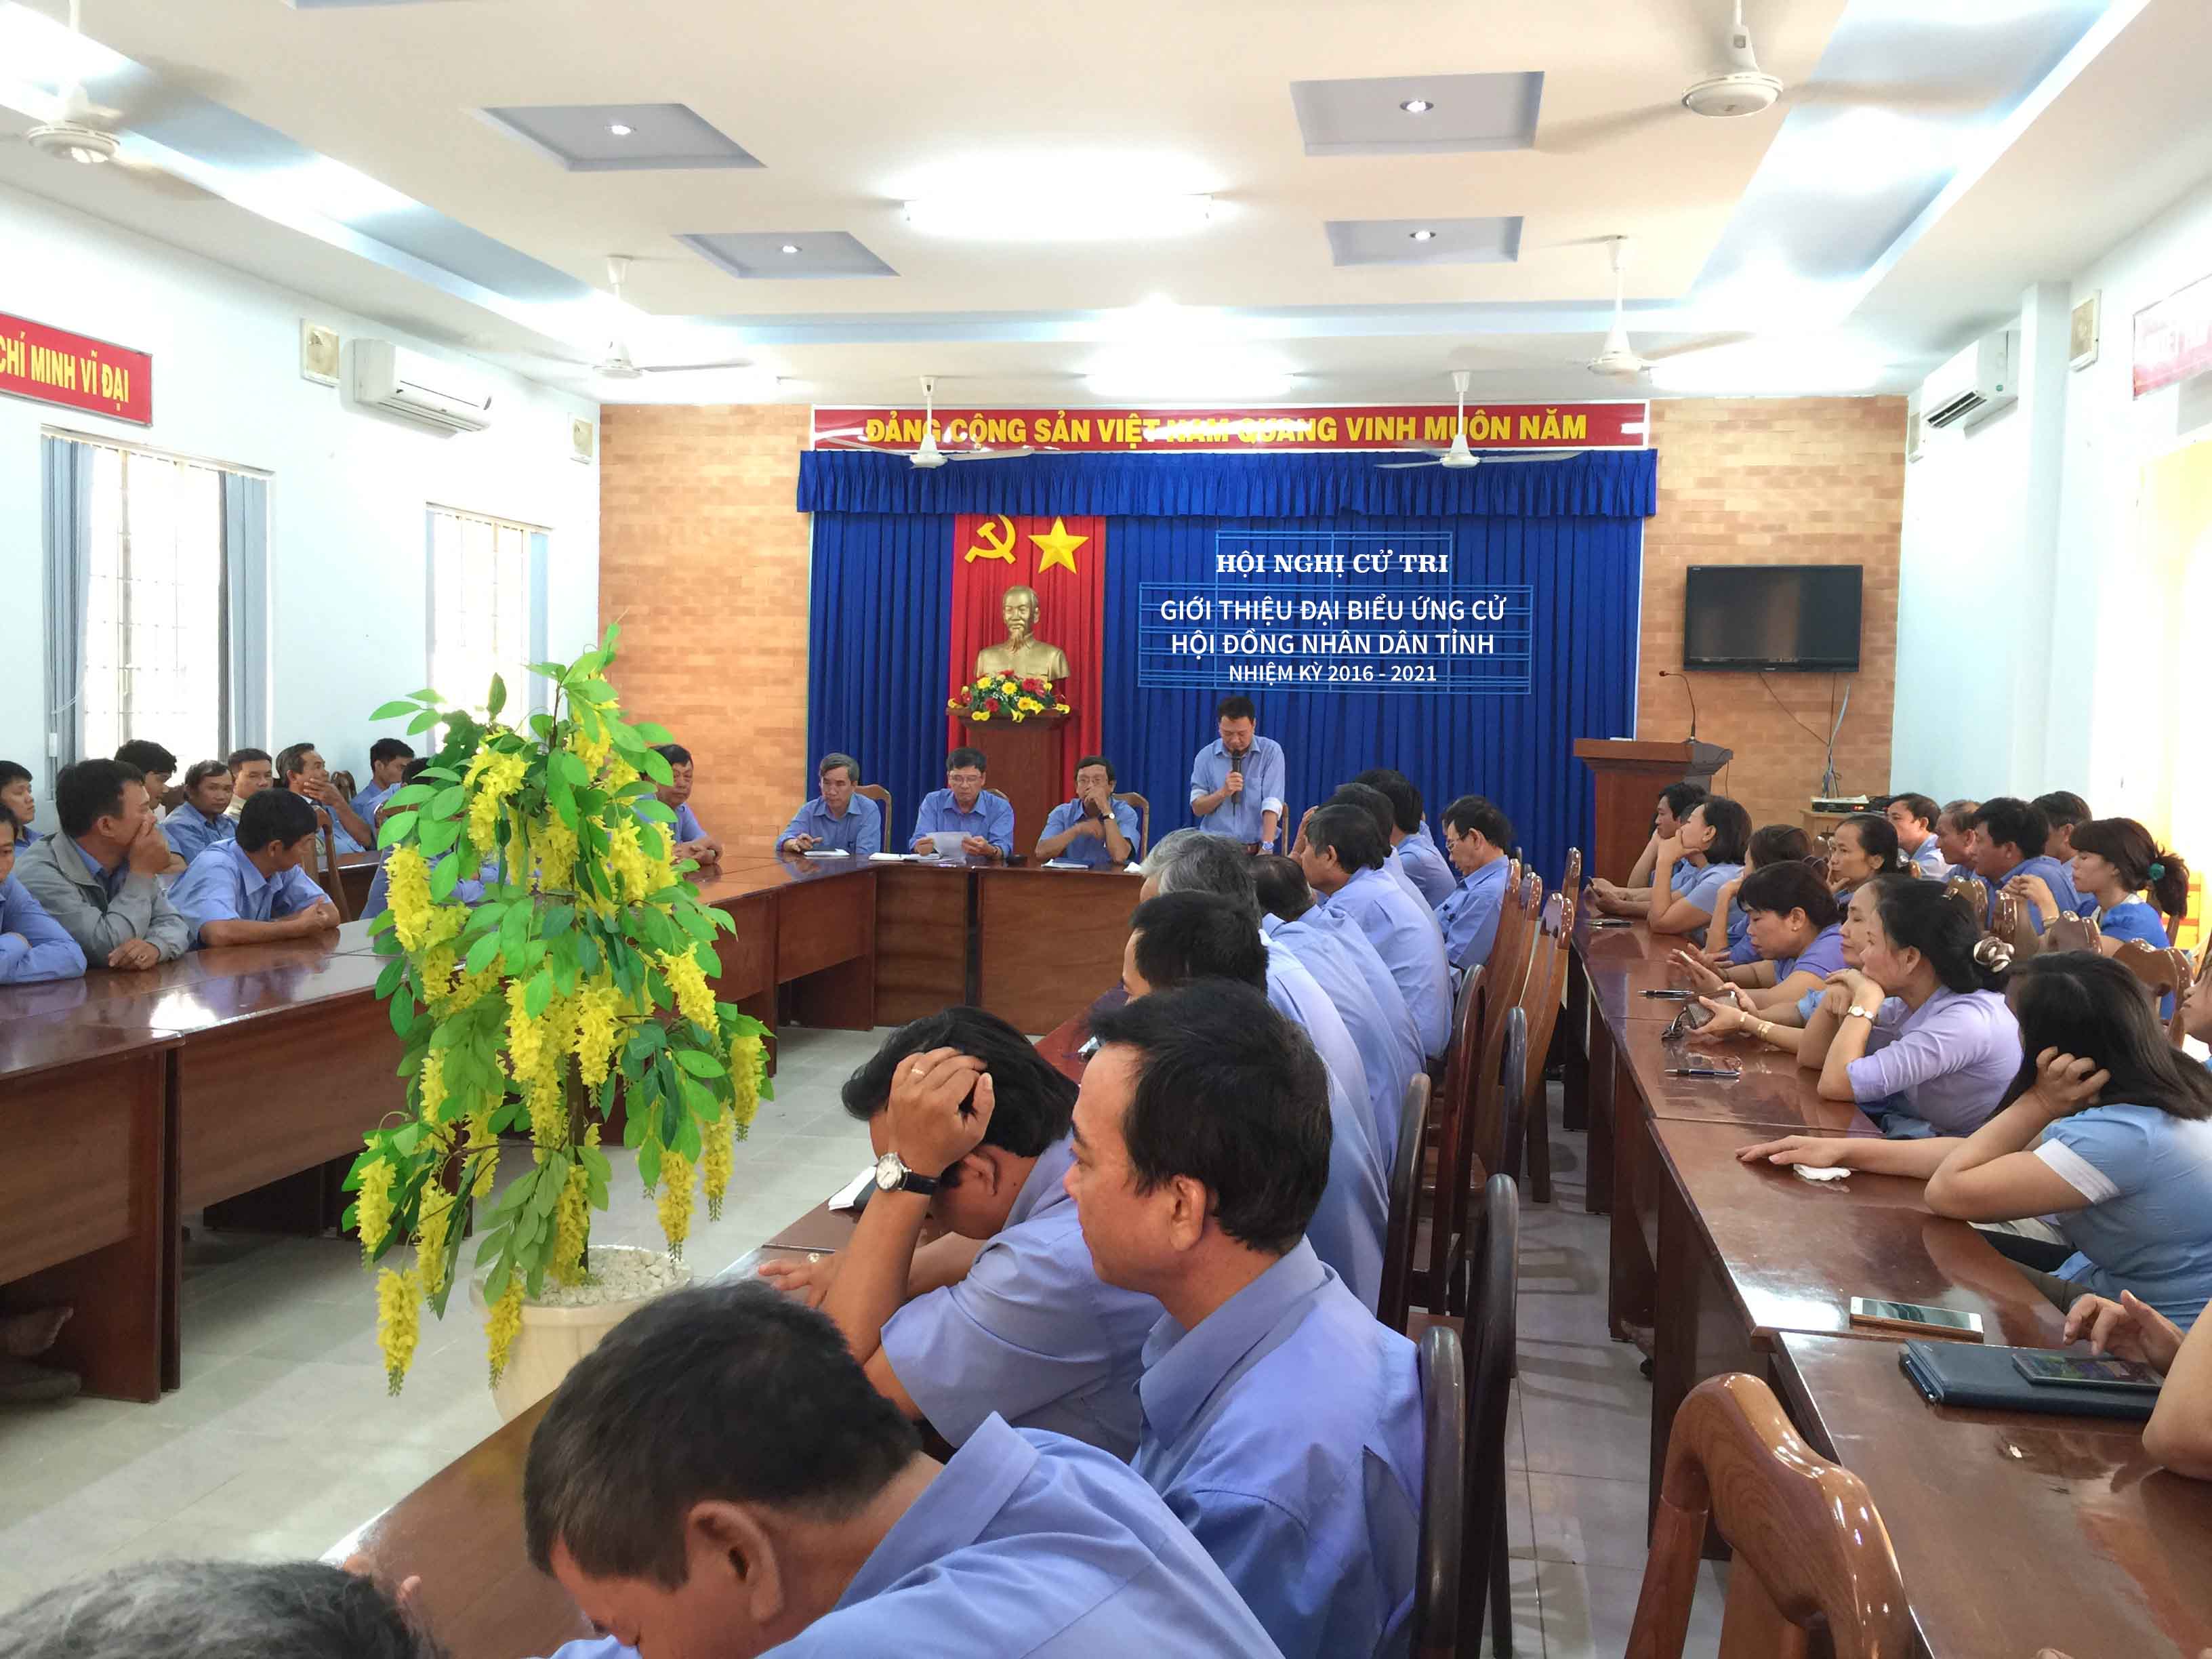 Hội nghị cử tri giới thiệu đại biểu ứng cử HĐND tỉnh Tây Ninh, nhiệm kỳ 2016 - 2021